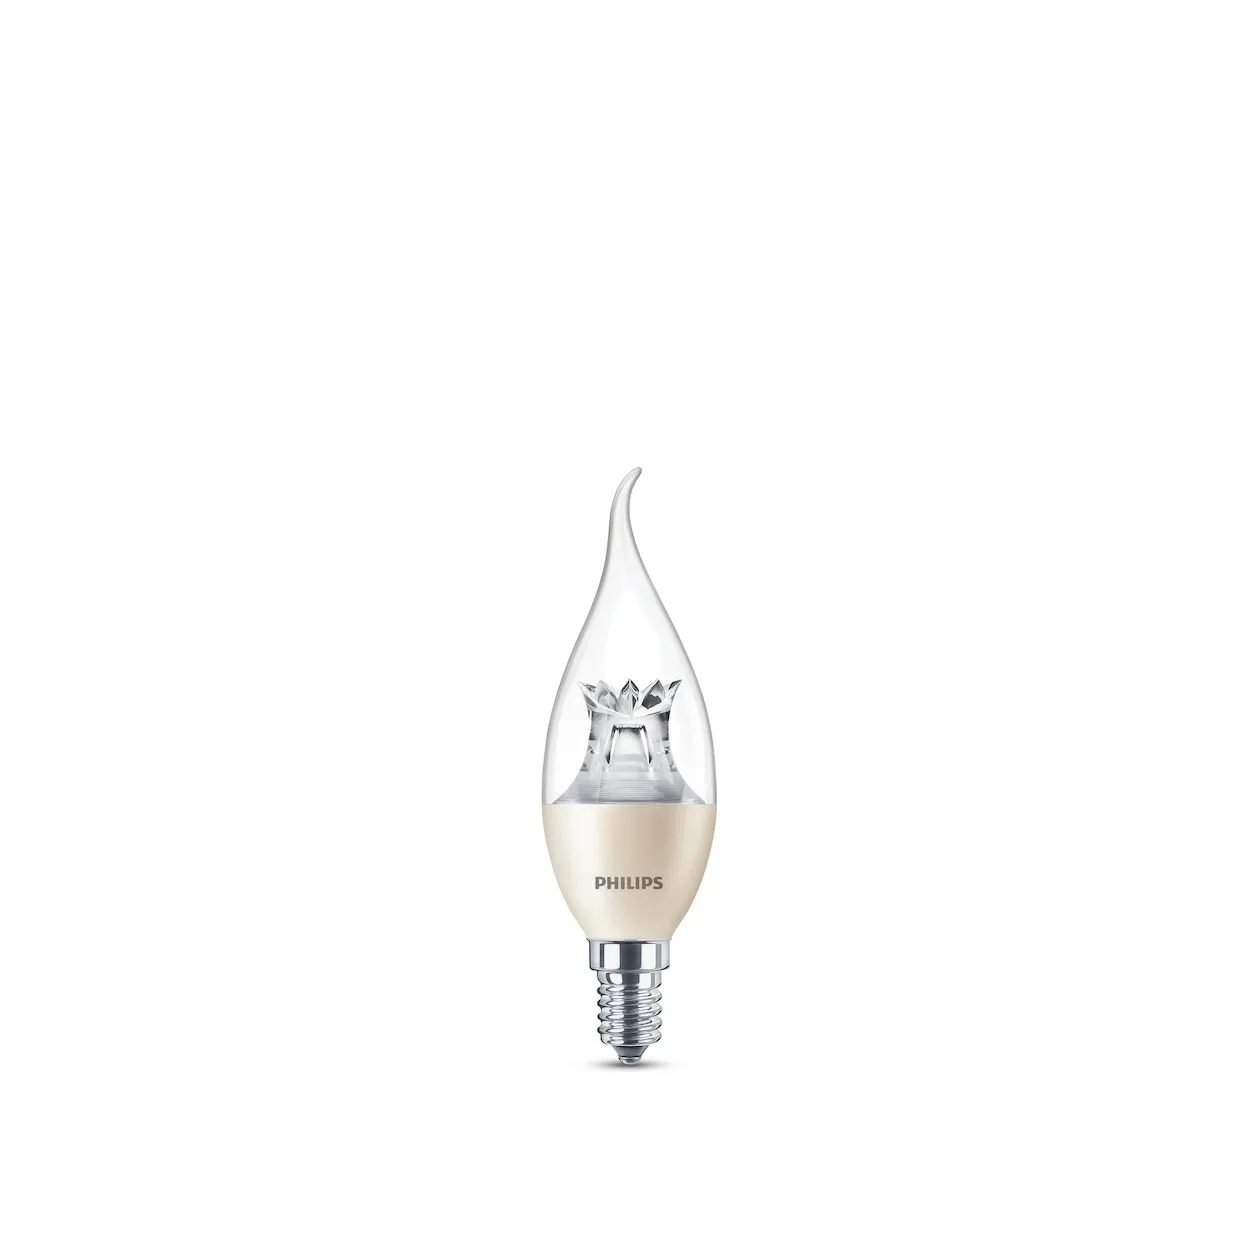 Philips LED lamp E14 4W 250Lm druipkaars helder dimbaar